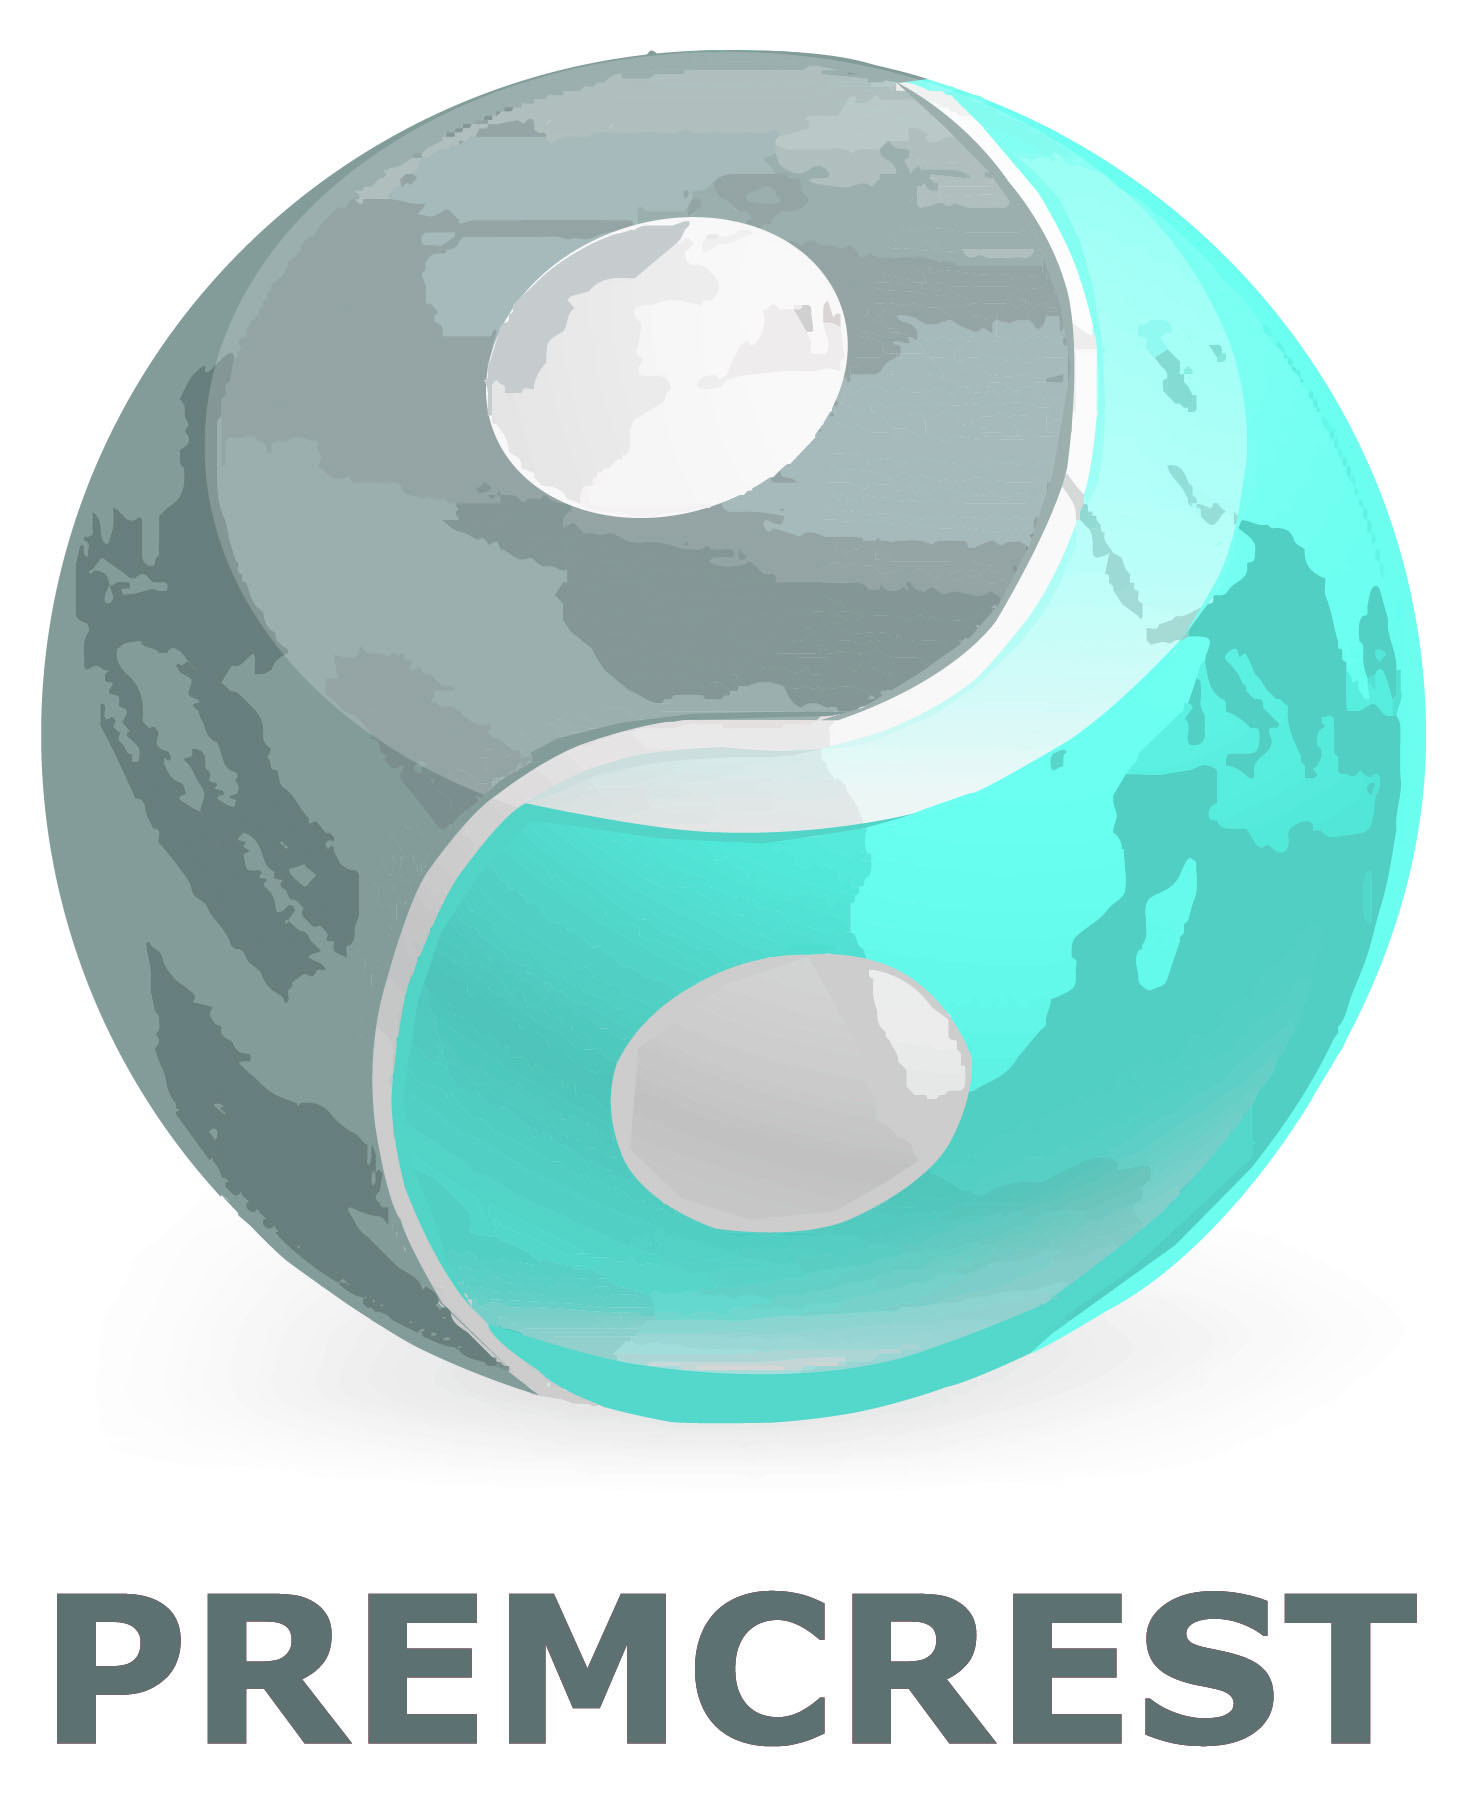 Premcrest Ltd image.